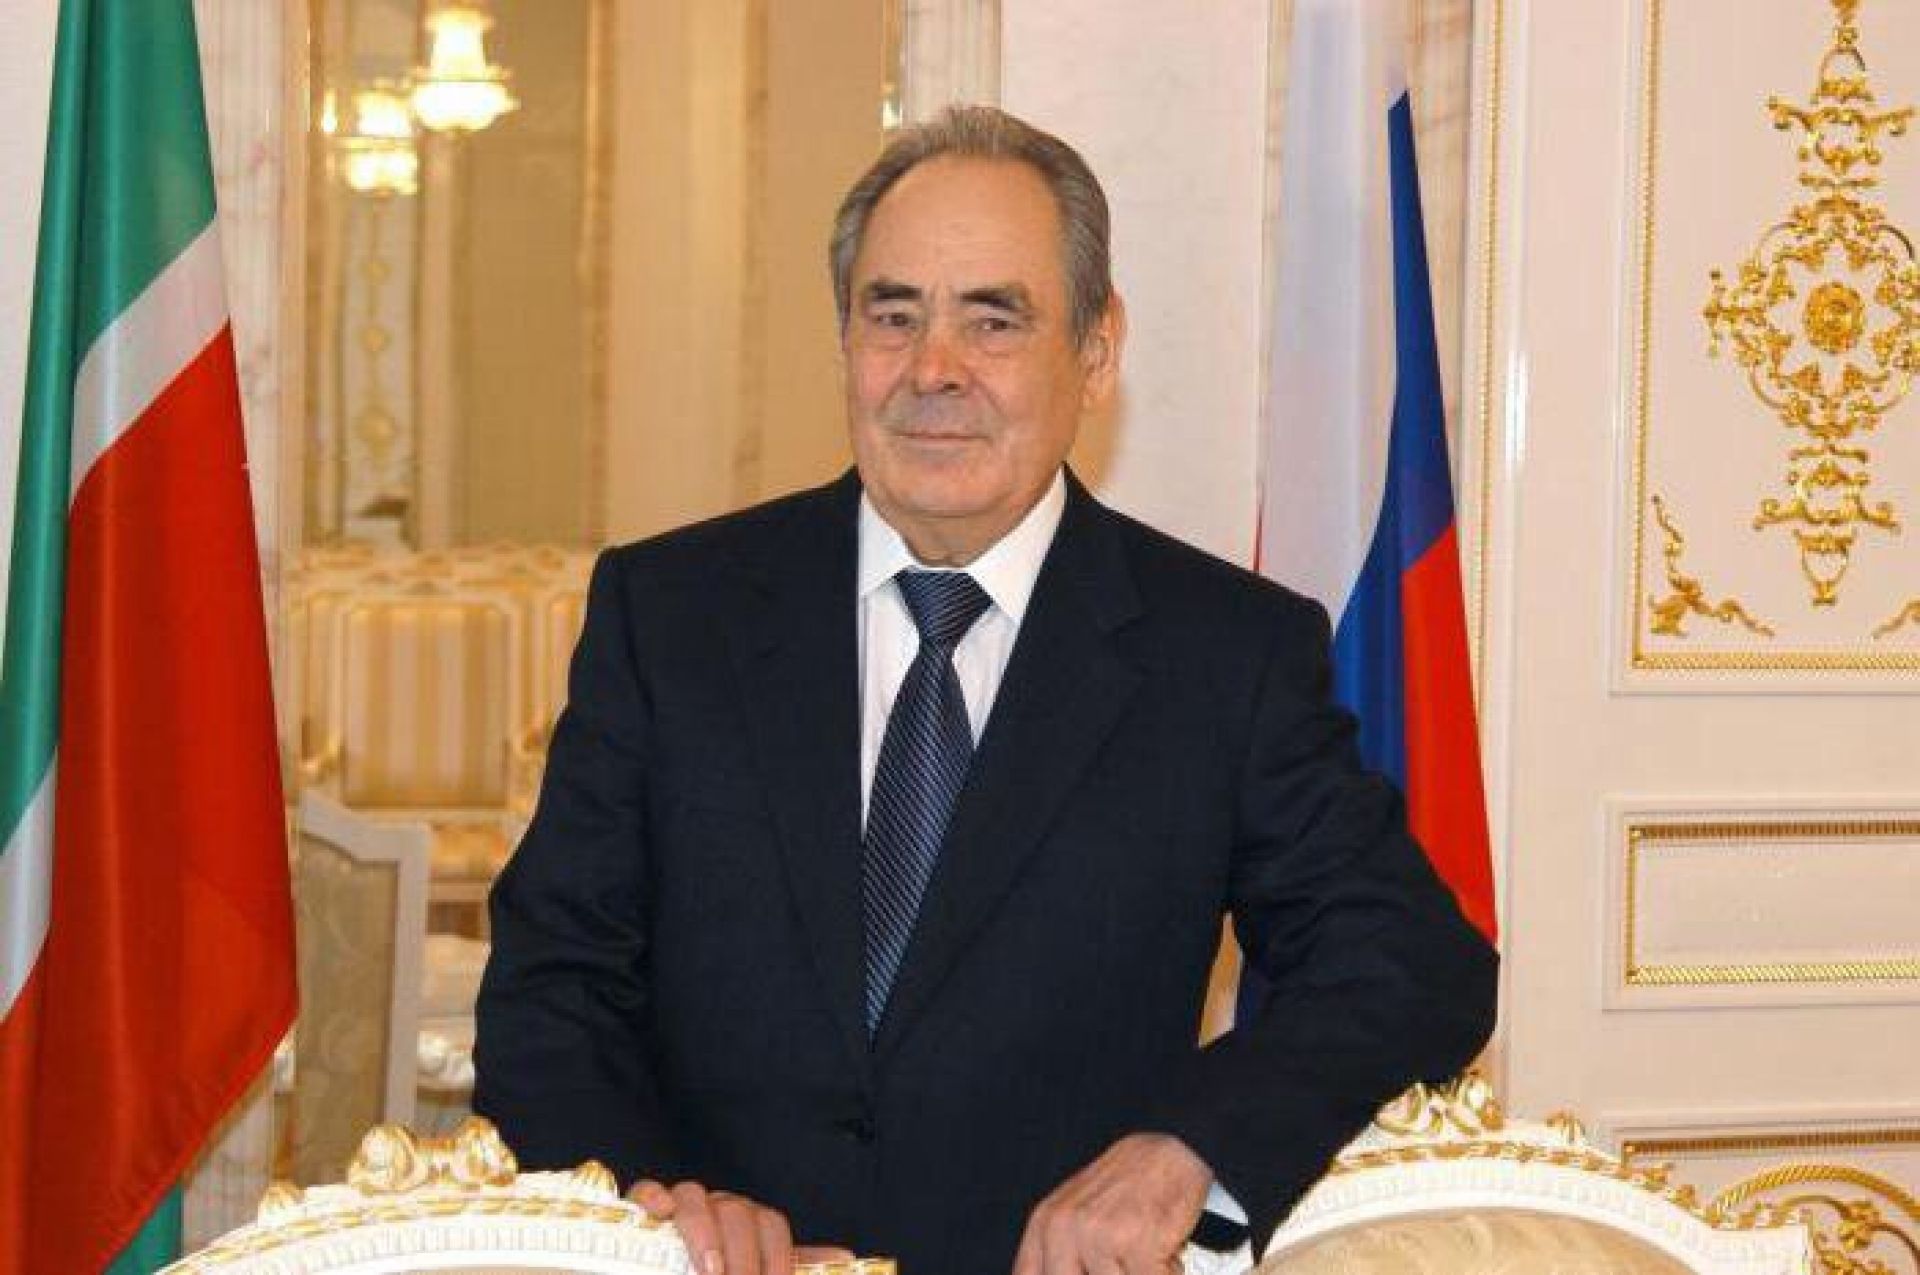 Поздравляем первого Президента Татарстана с днем рождения